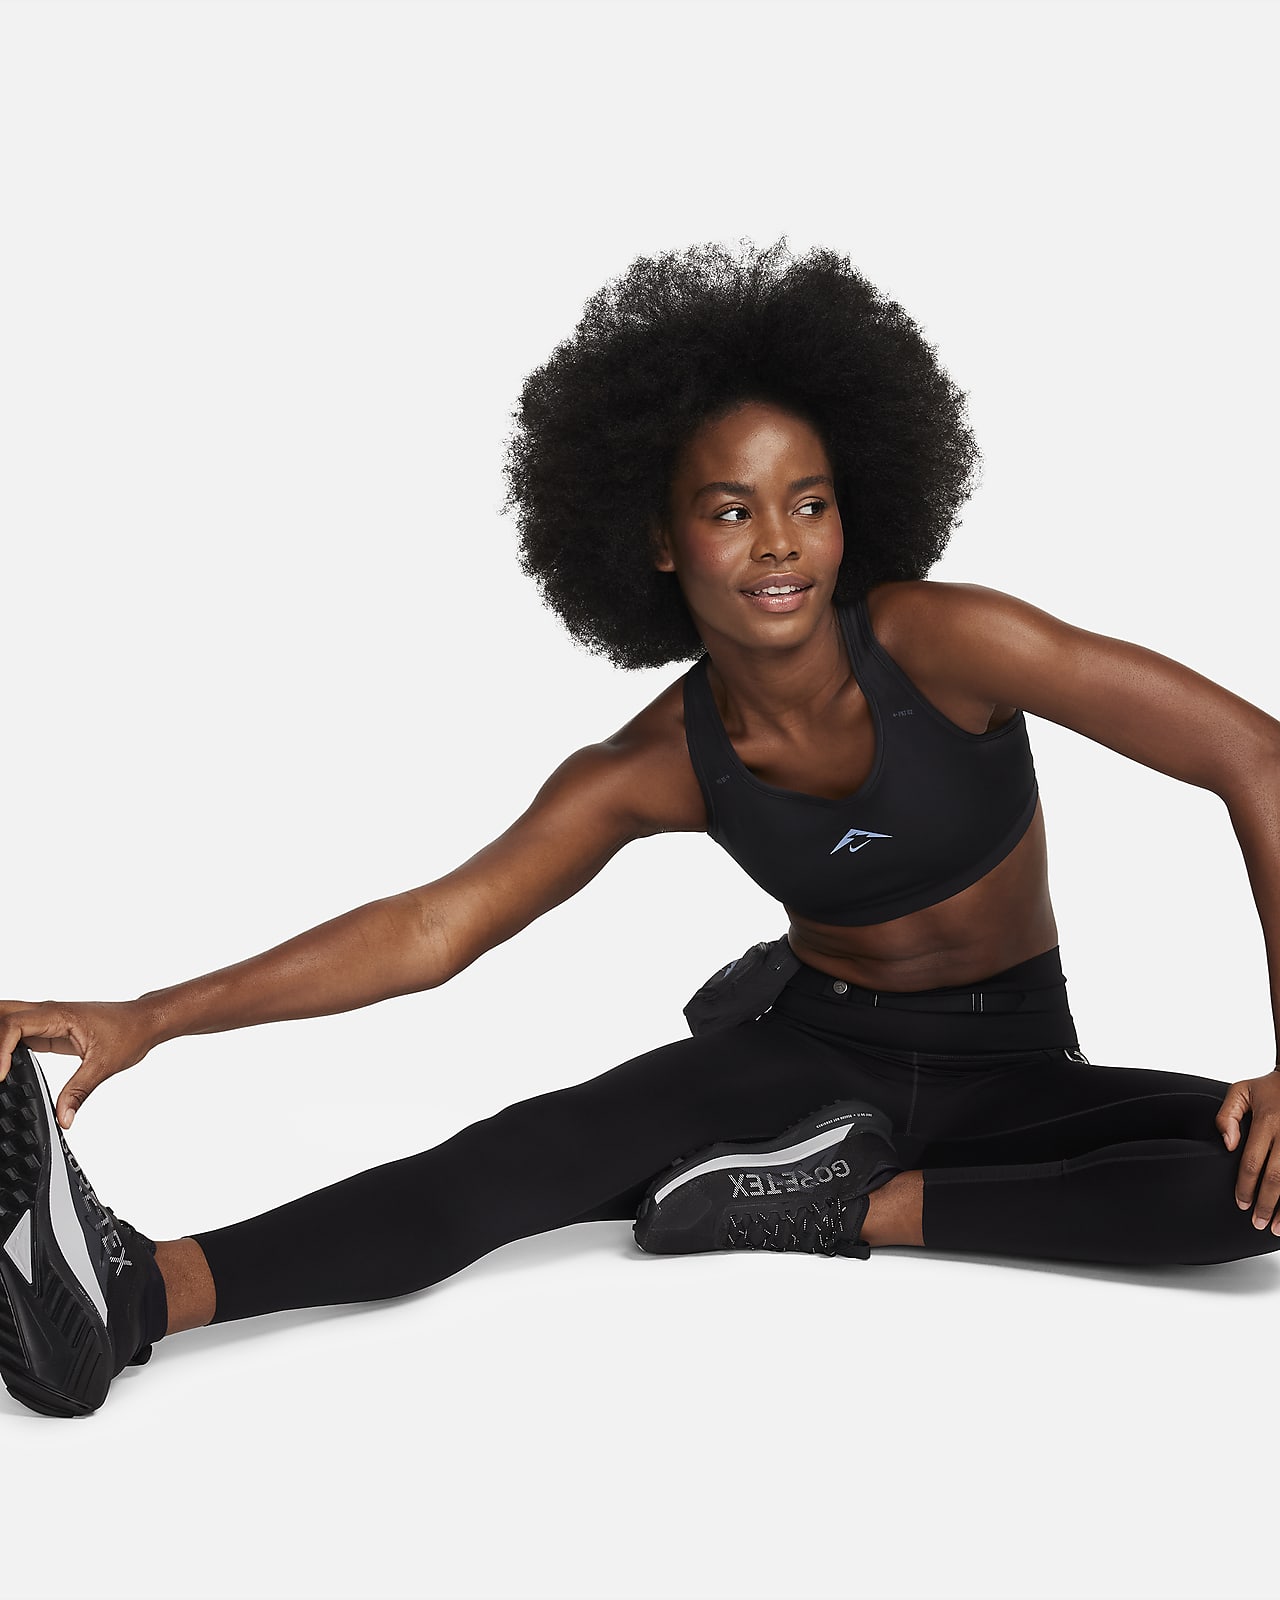 Nike Dri Fit Sports Bra Size 30D Run Walk Fitness Wire Free NWOT Aqua